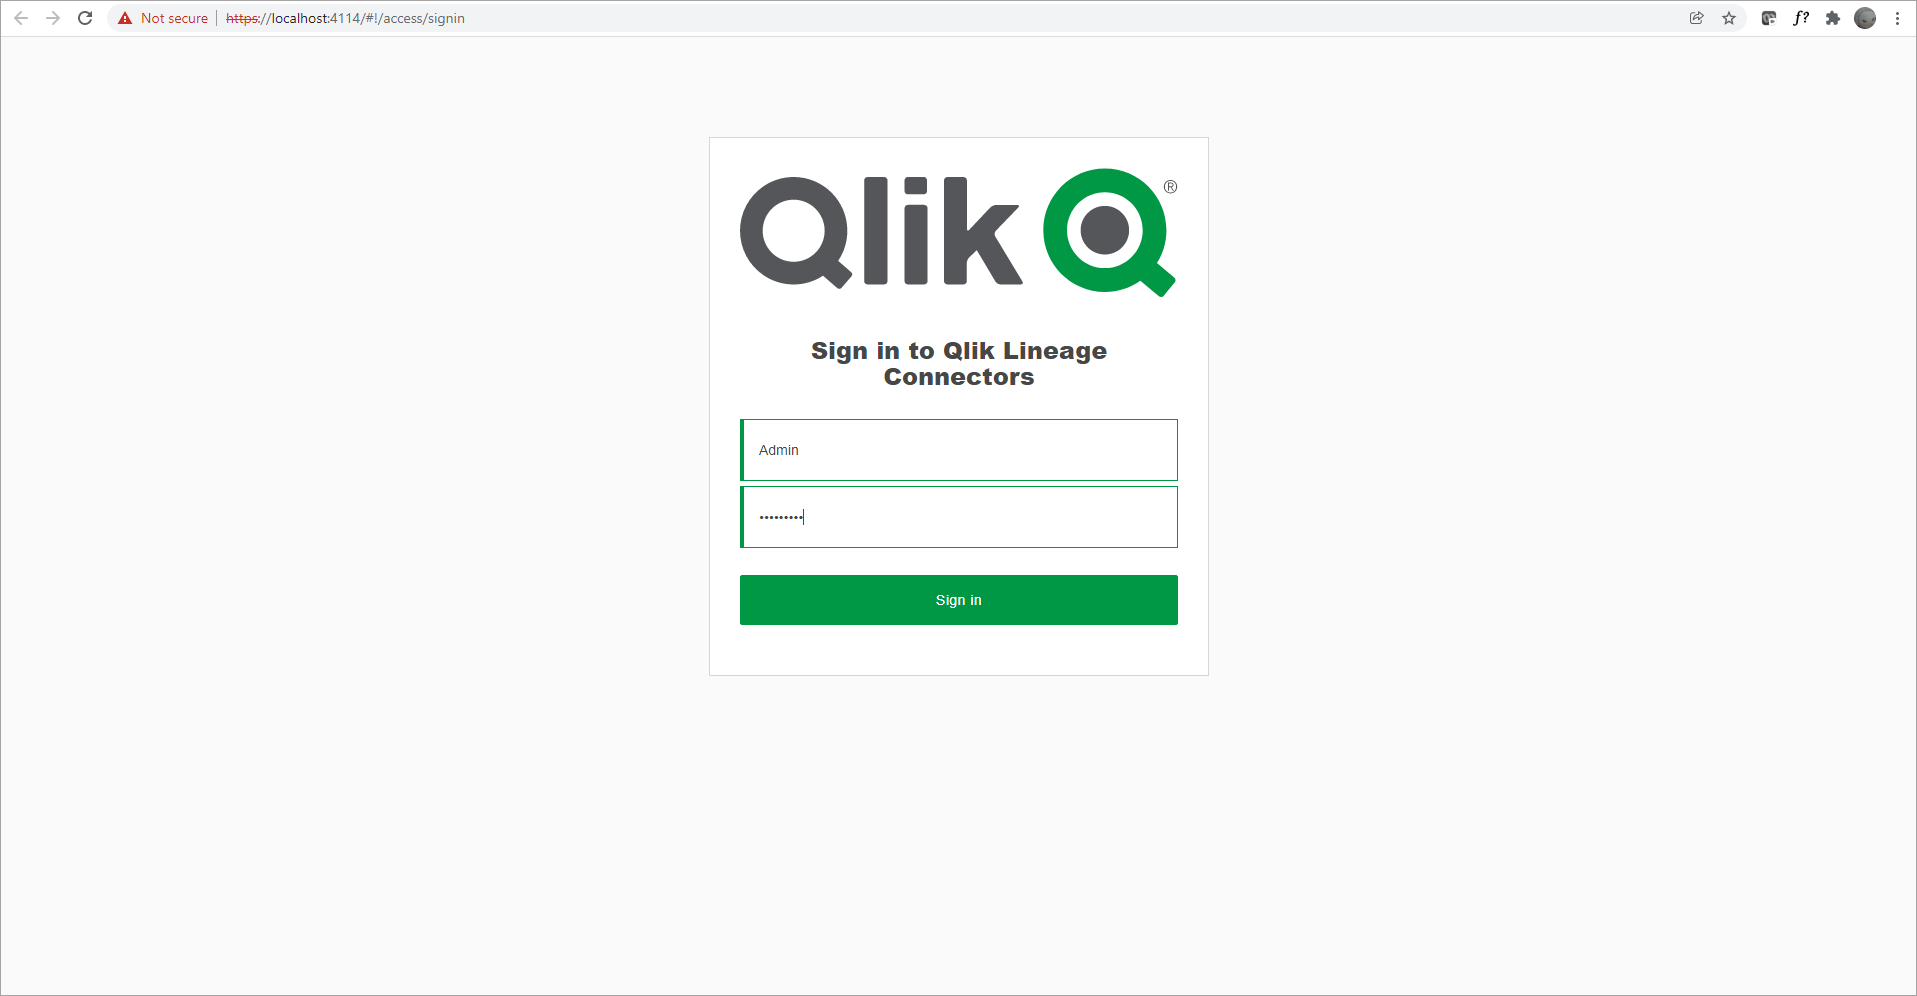 aanmelding op de Qlik Lineage Connectors-webpagina met beheerdersreferenties